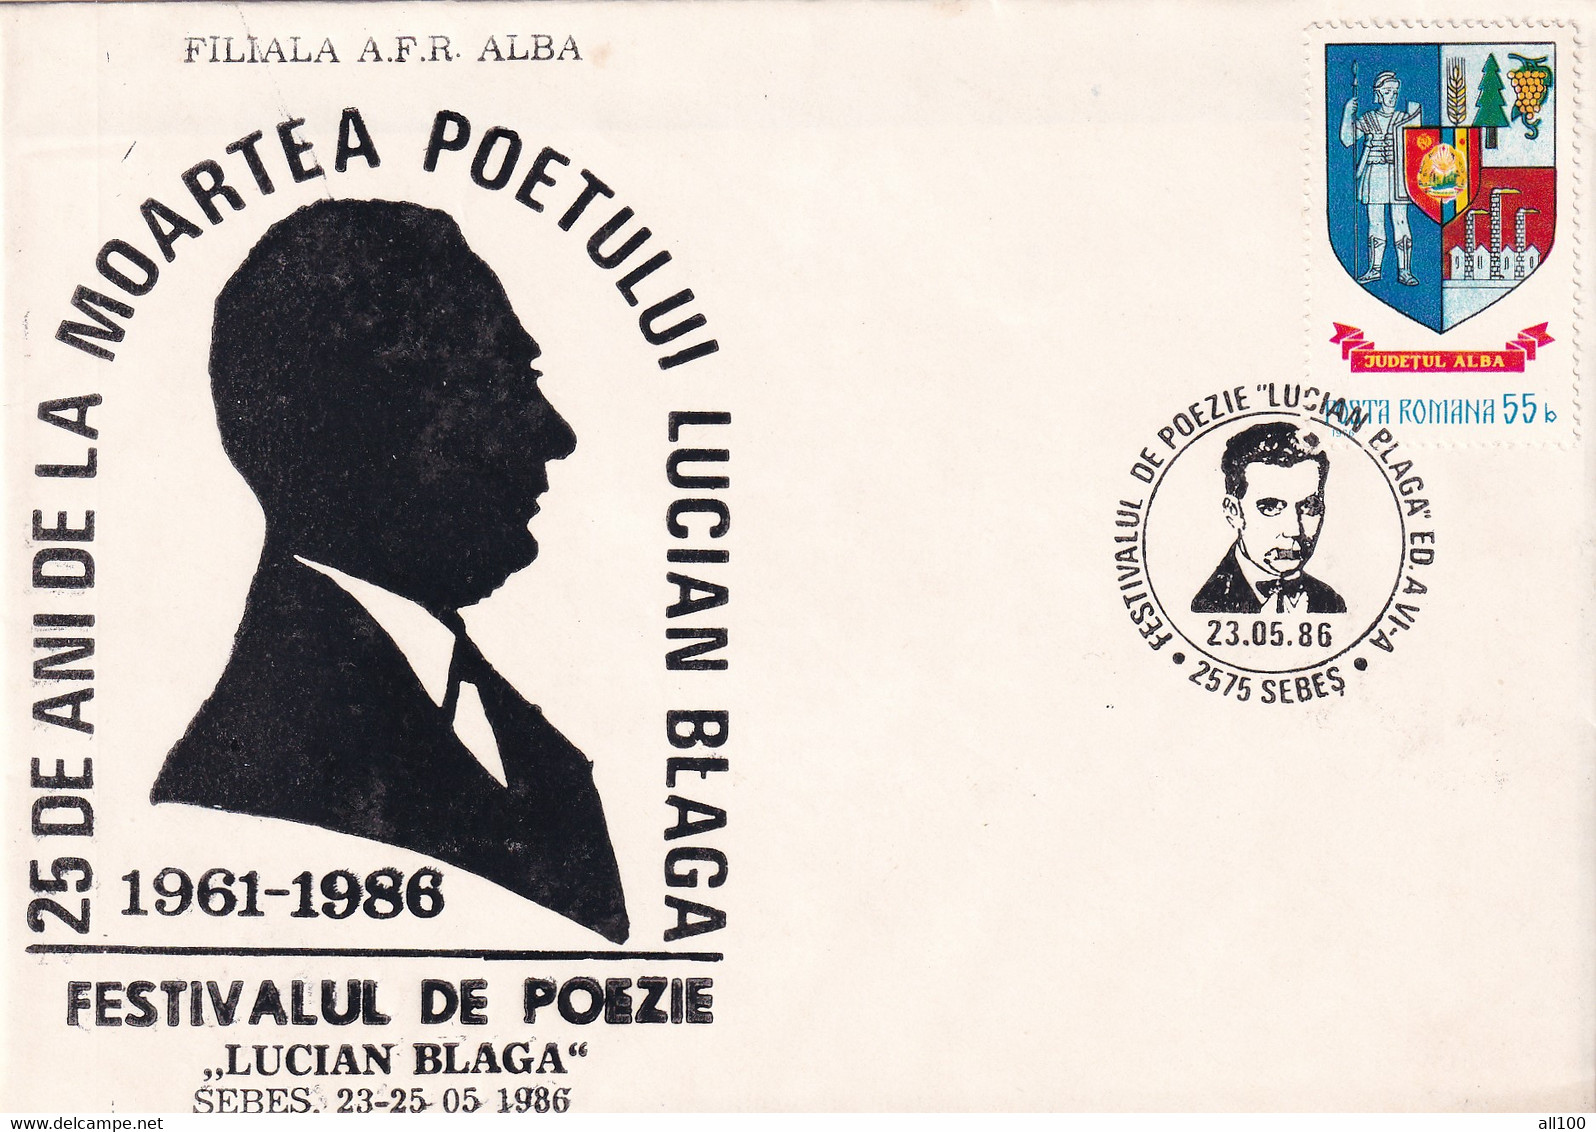 A19348 - 25 ANI DE LA MOARTEA POETULUI LUCIAN BLAGA COVER ENVELOPE UNUSED 1986 REPUBLICA SOCIALISTA ROMANIA RSR - Briefe U. Dokumente